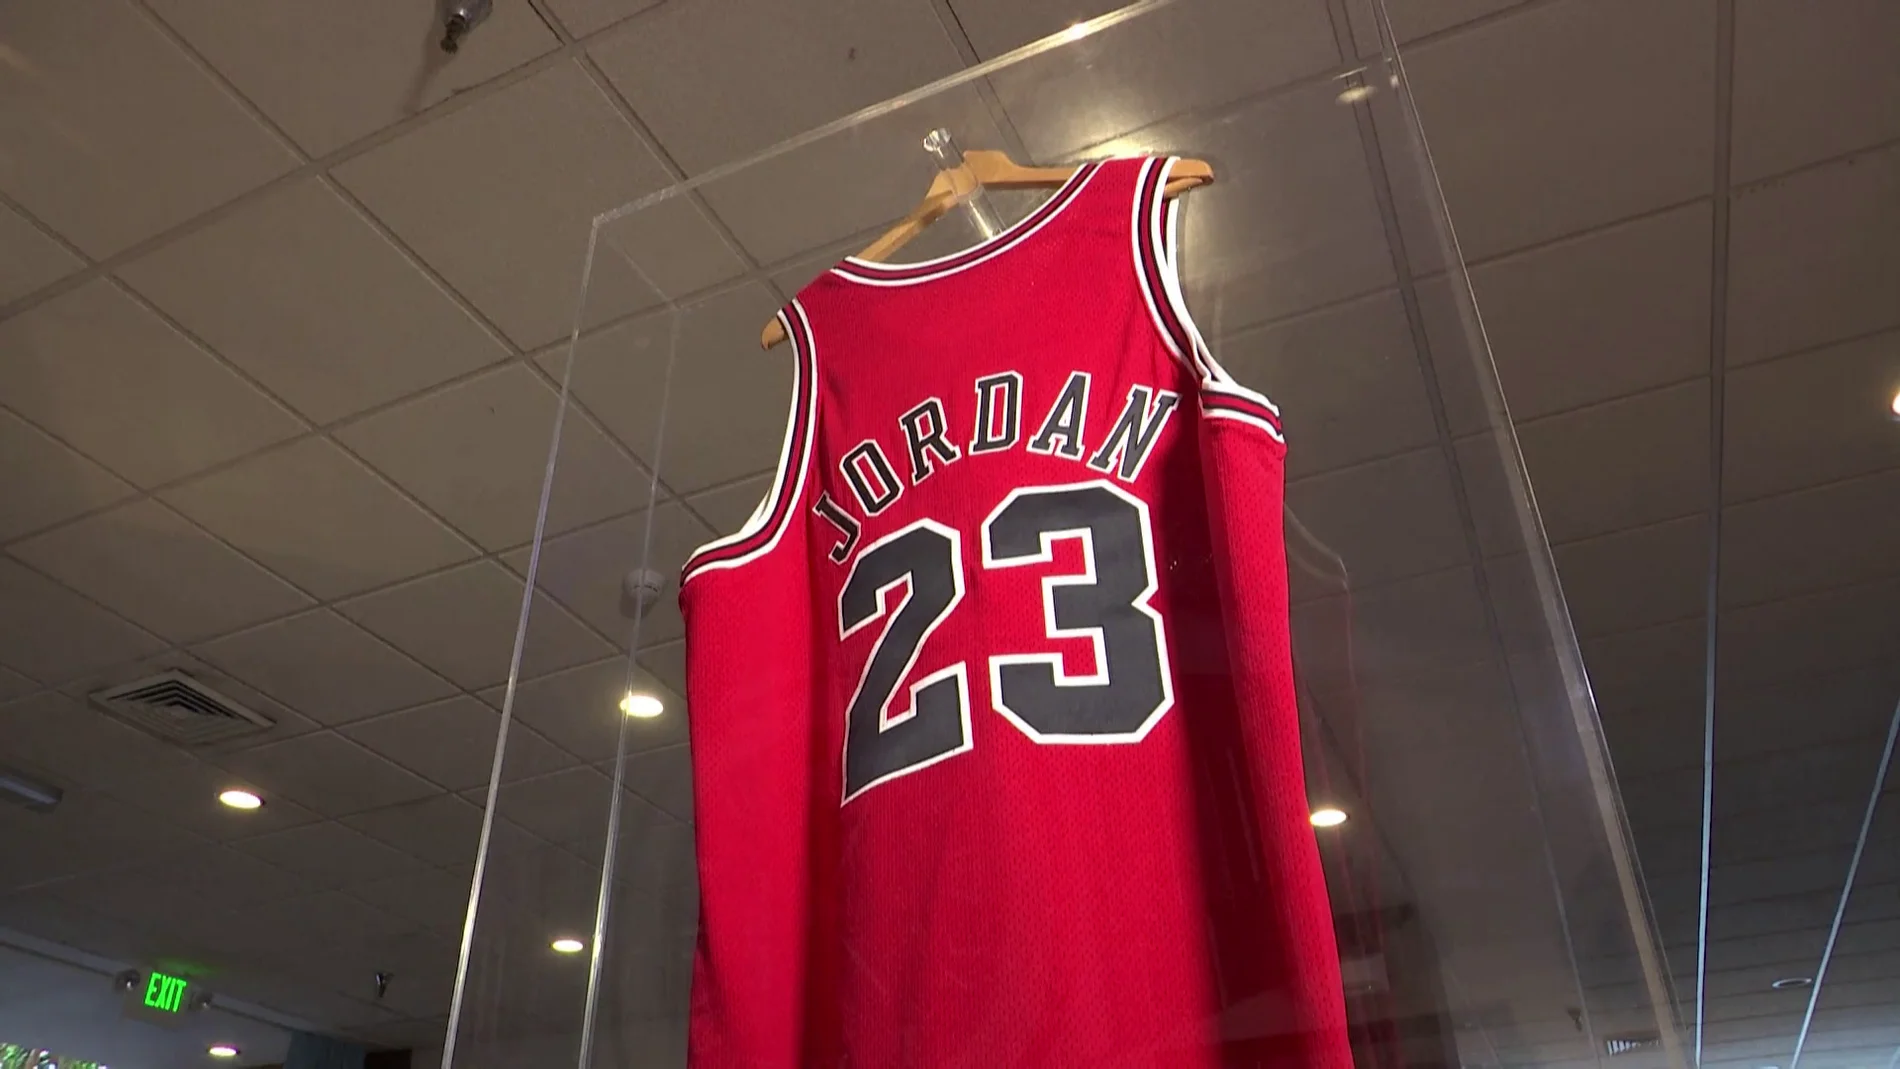 Sale a subasta la histórica camiseta de Michael Jordan con la que jugó